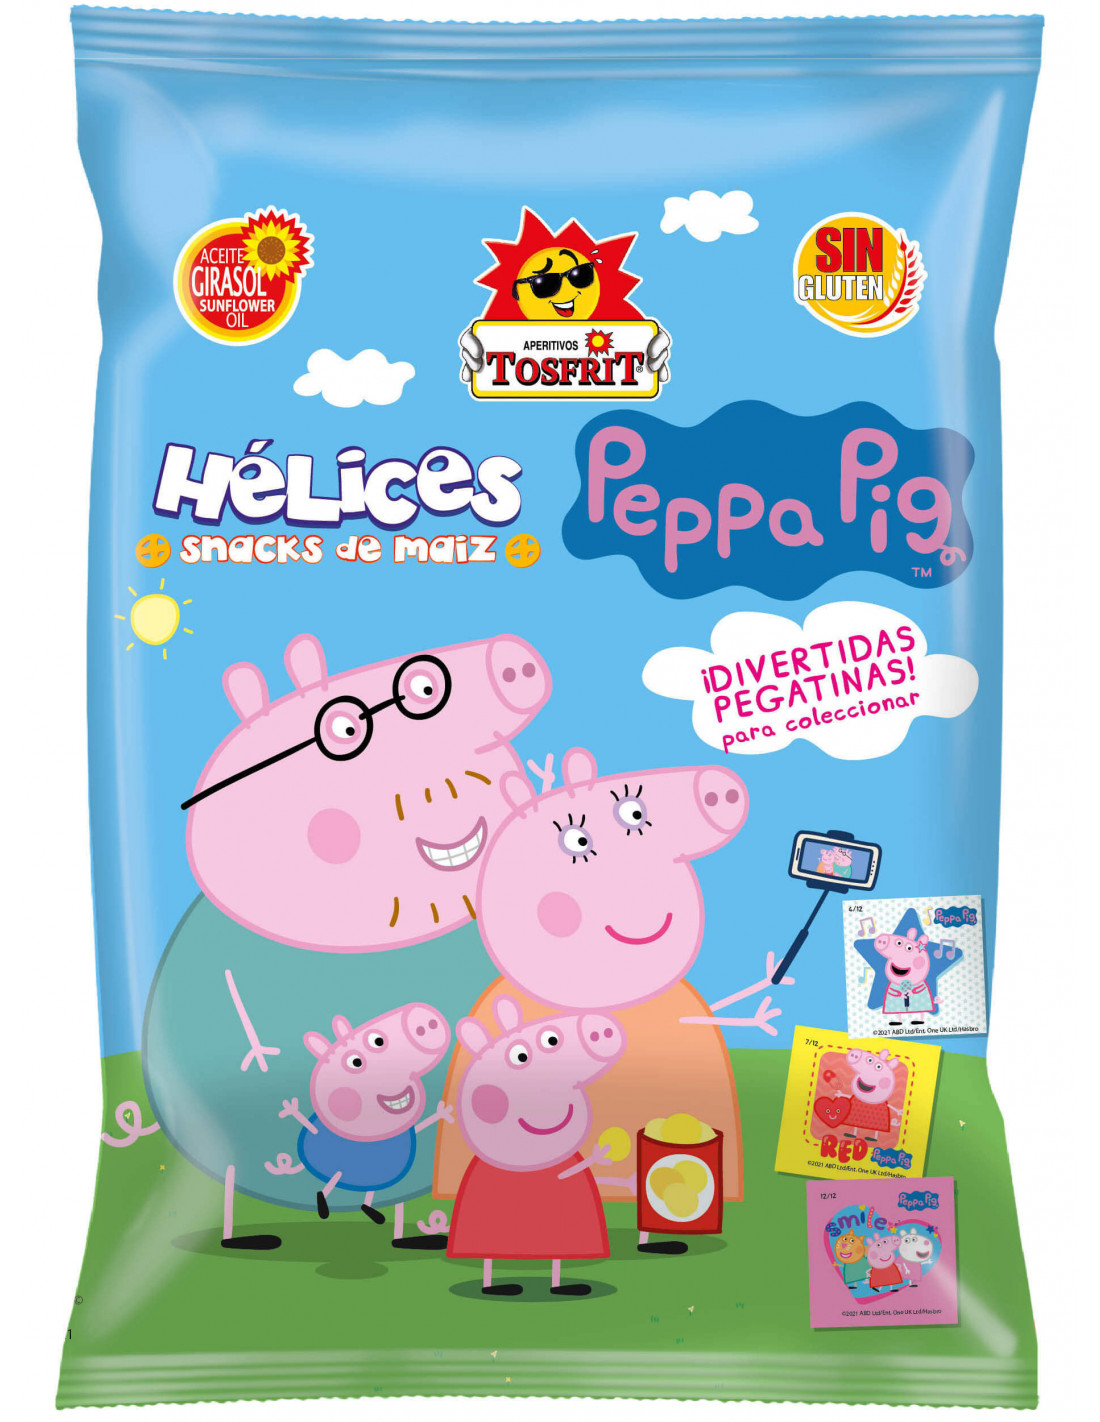 Fiesta temática de Peppa Pig. Un montón de productos en Sugaramma